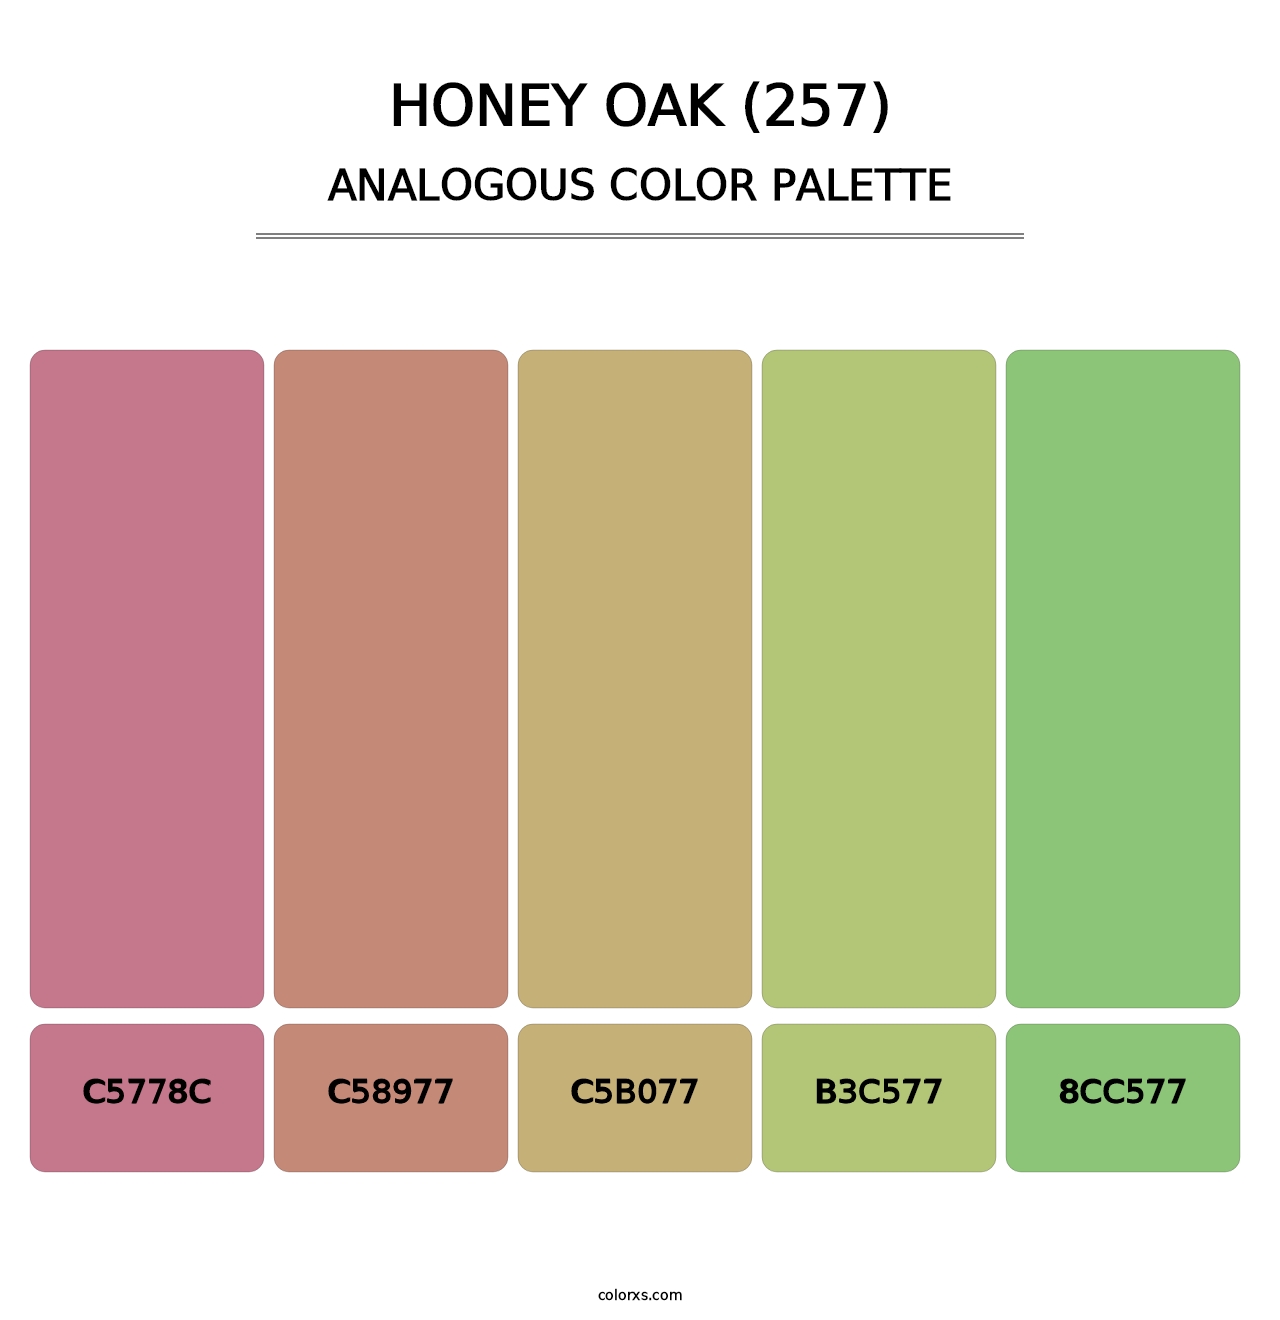 Honey Oak (257) - Analogous Color Palette